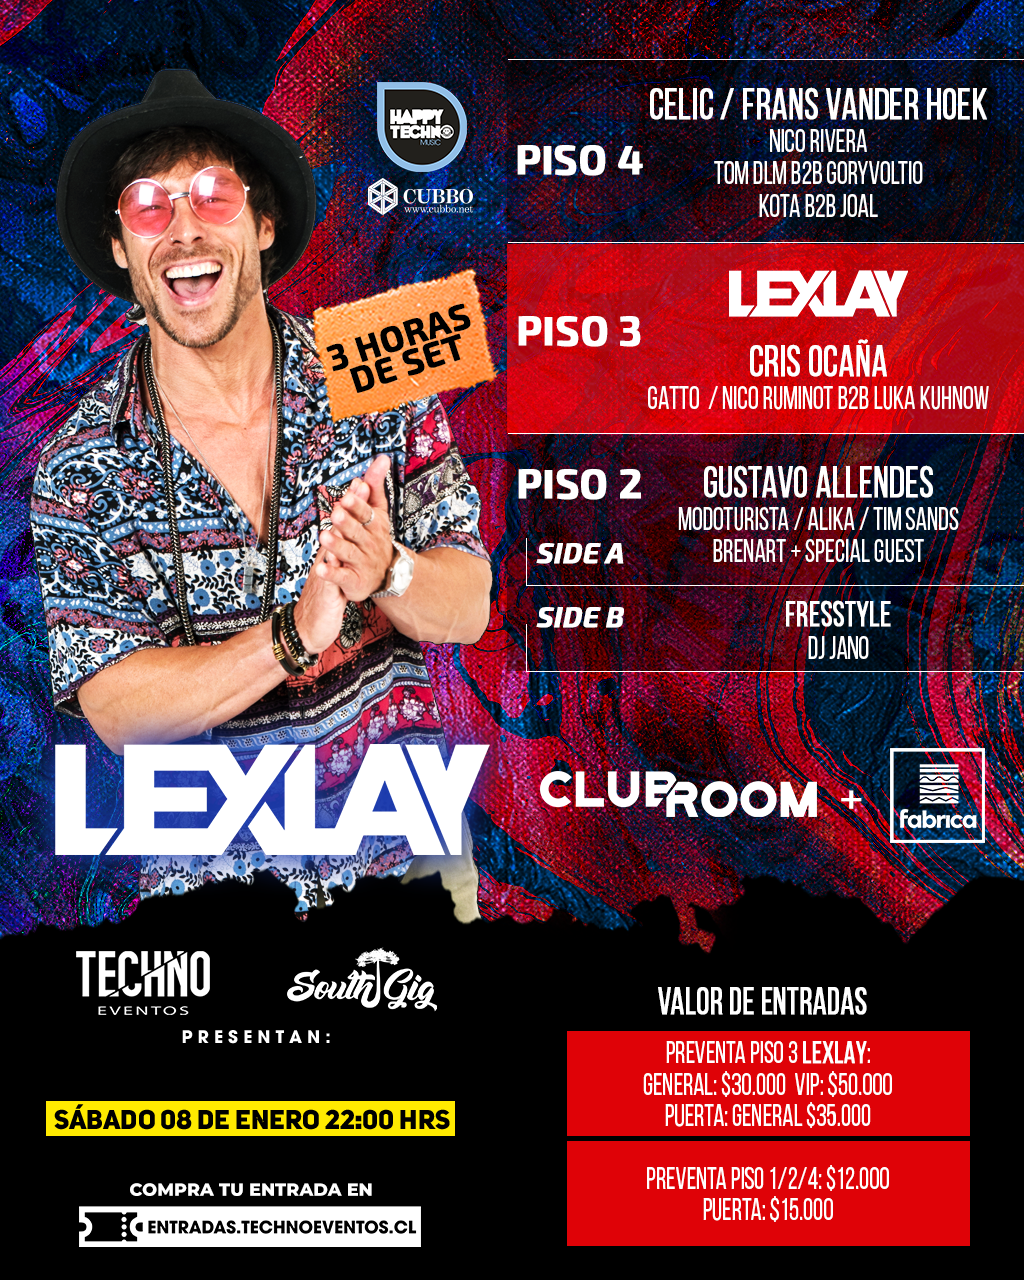 LEXLAY | CLUB ROOM + FABRICA (SABADO 08 ENERO)